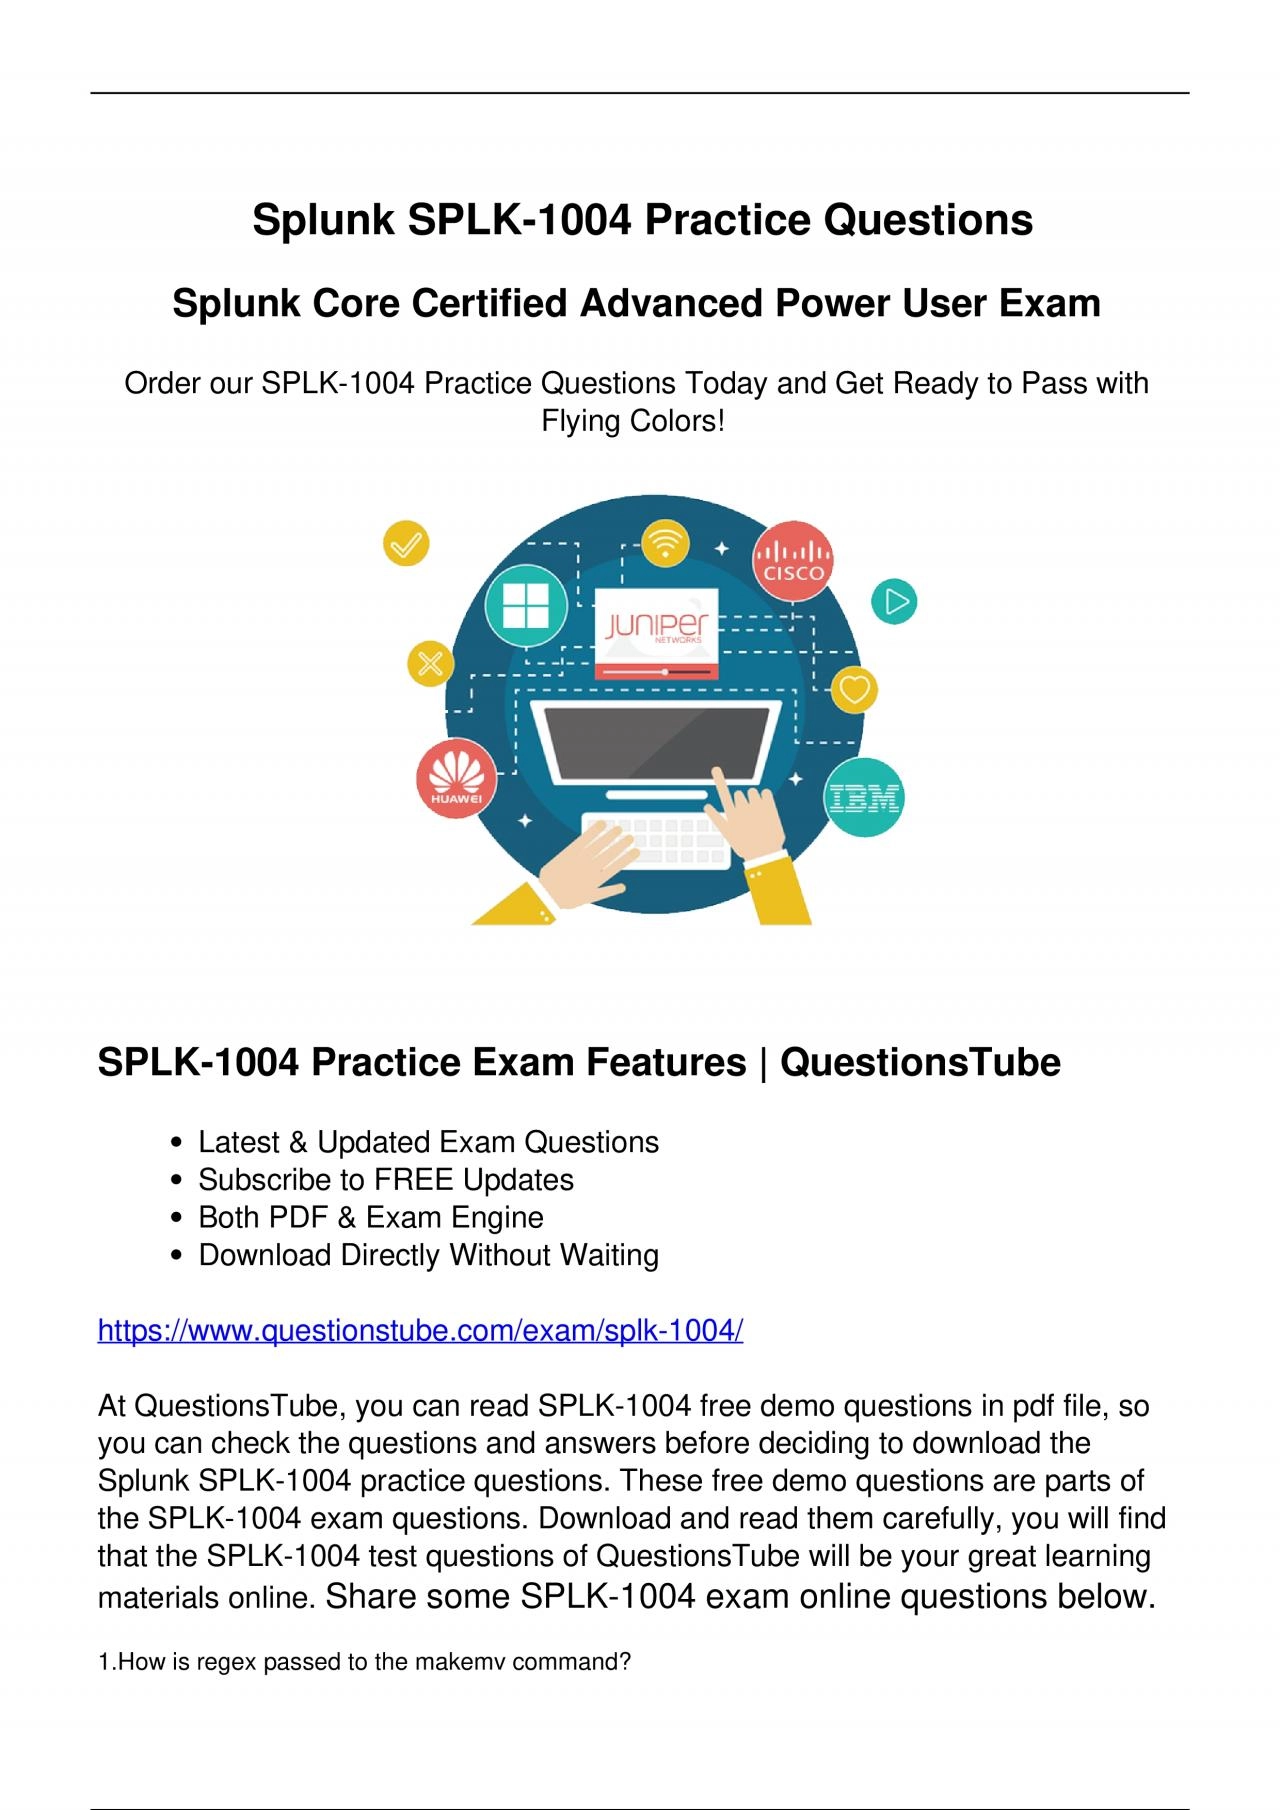 Splunk SPLK-1004 Practice Questions - Pass Your Exam with QuestionsTube